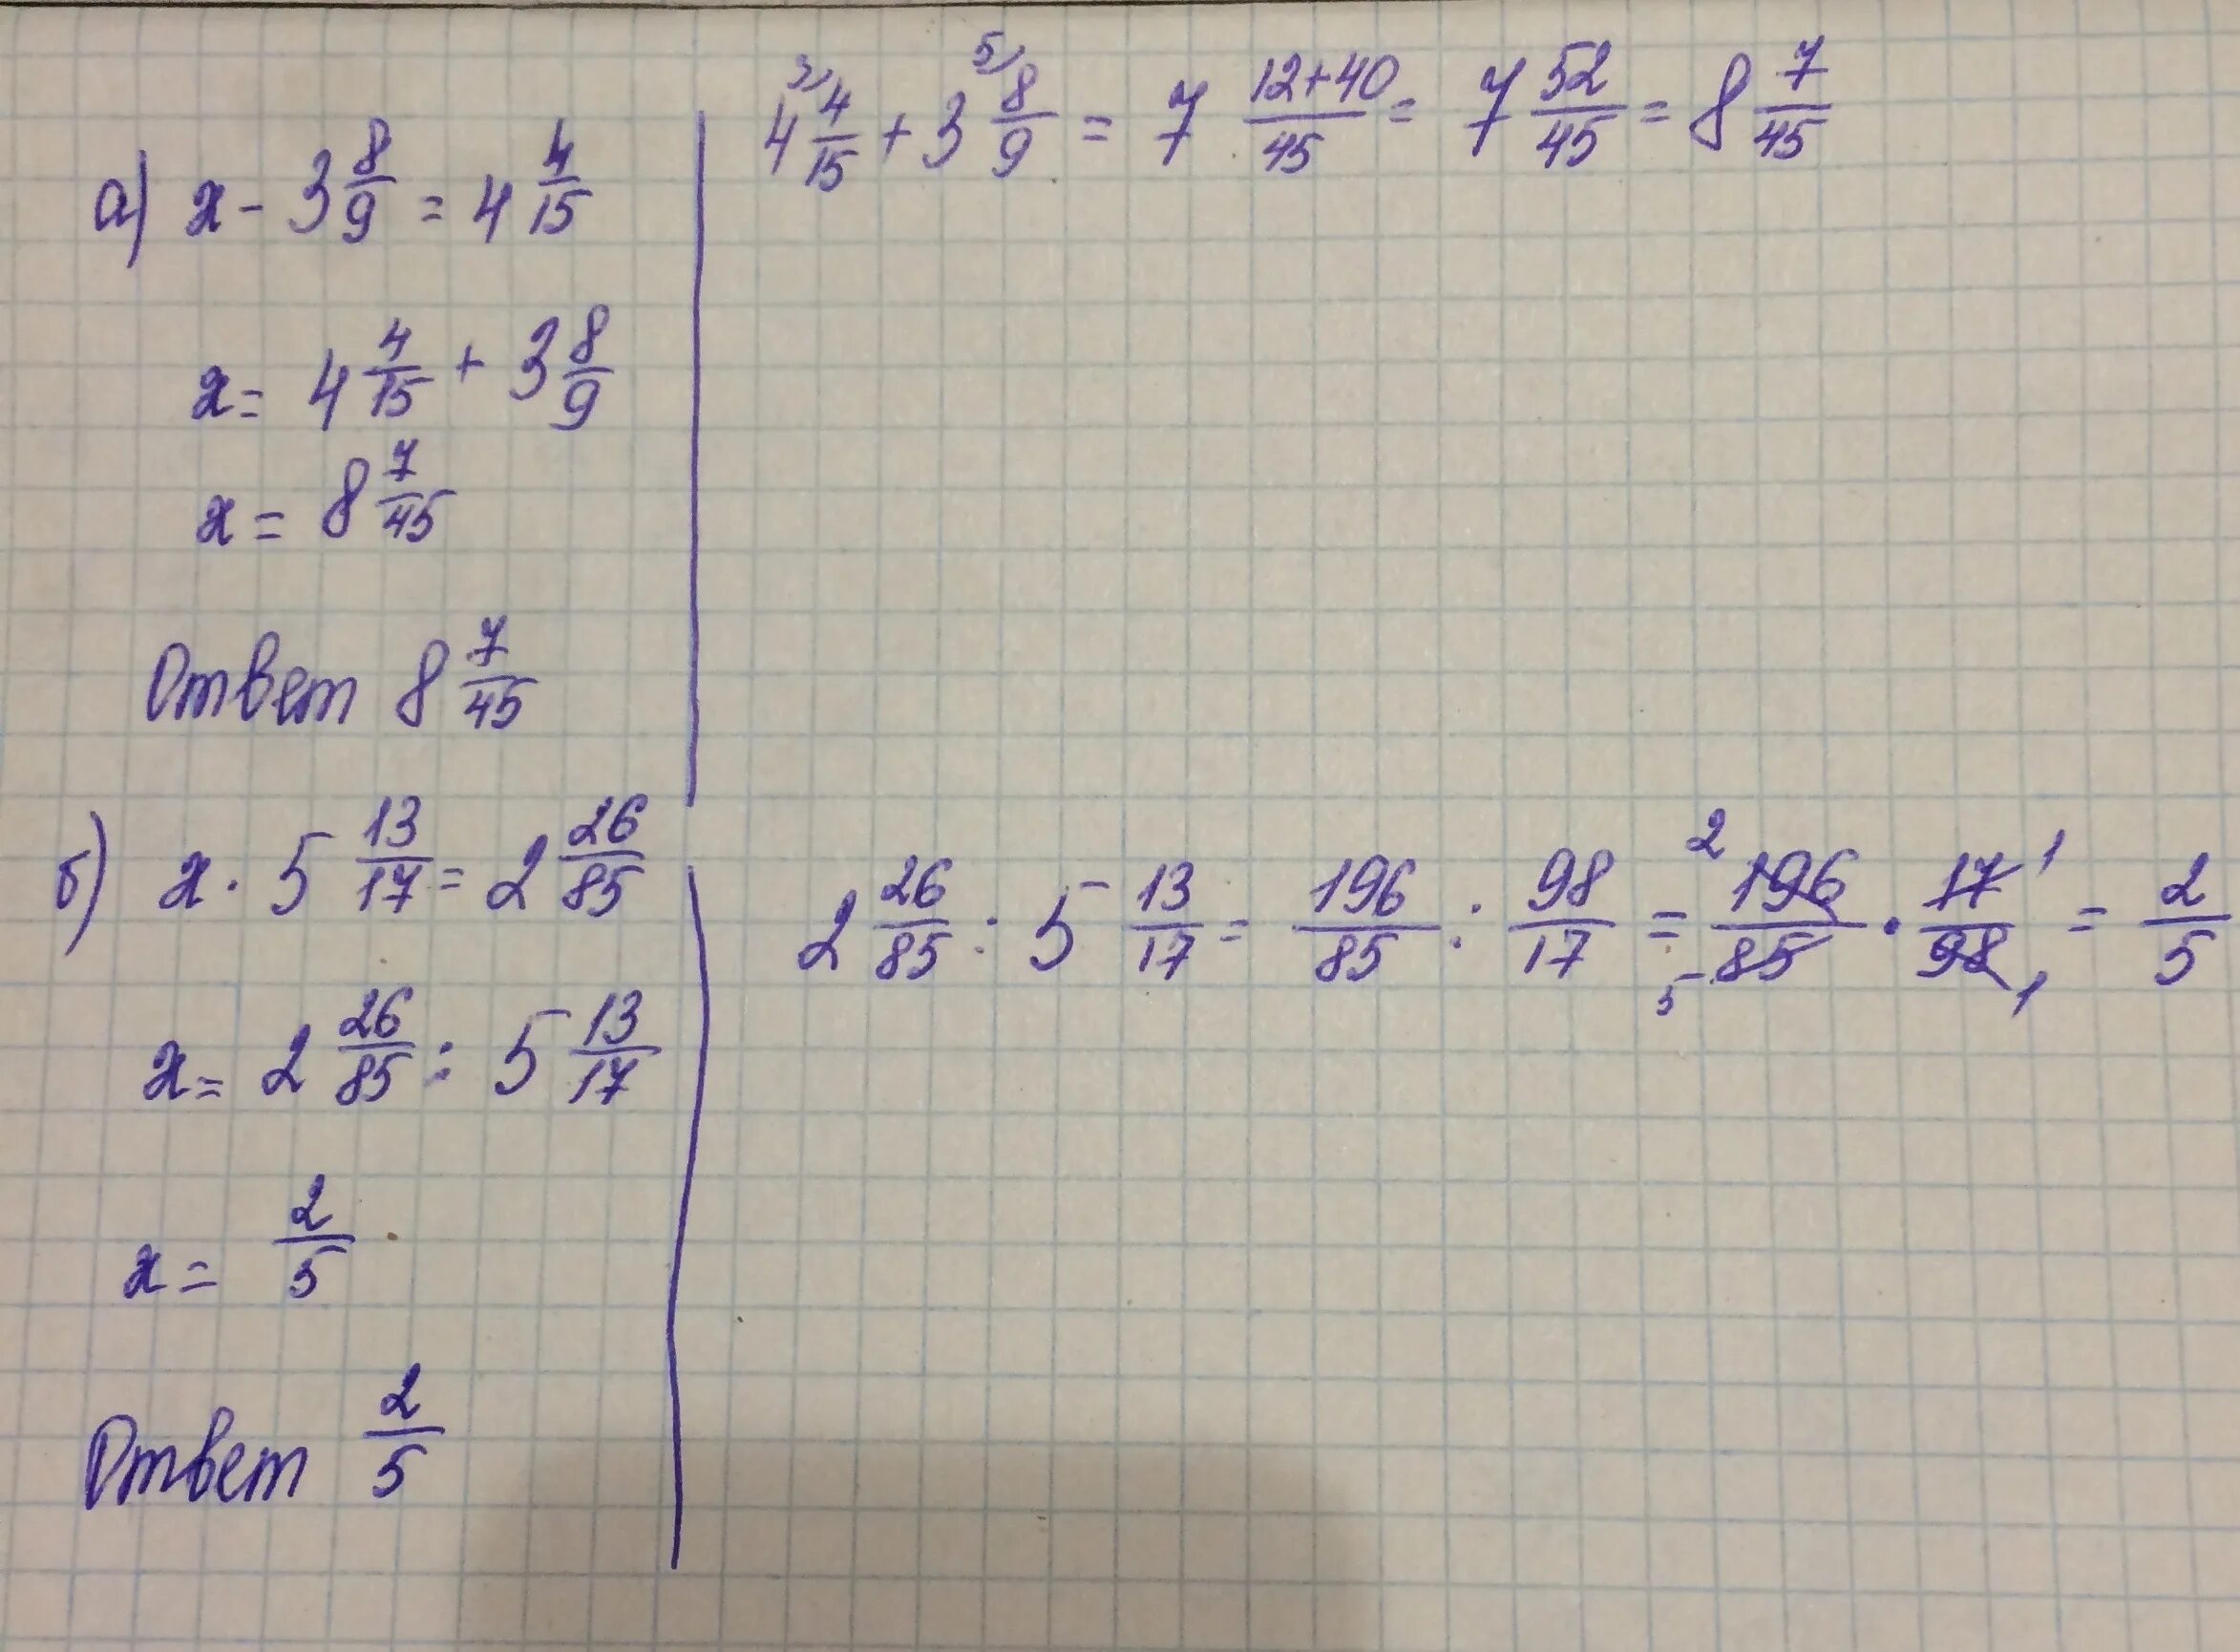 4х/3-17+3х-17/4=х+5/2. 4х 5 13 8 9 решение уравнение. 4х+5/13 8/9. Х*3/5=-4/15. 4x 5 13 8 9 решите